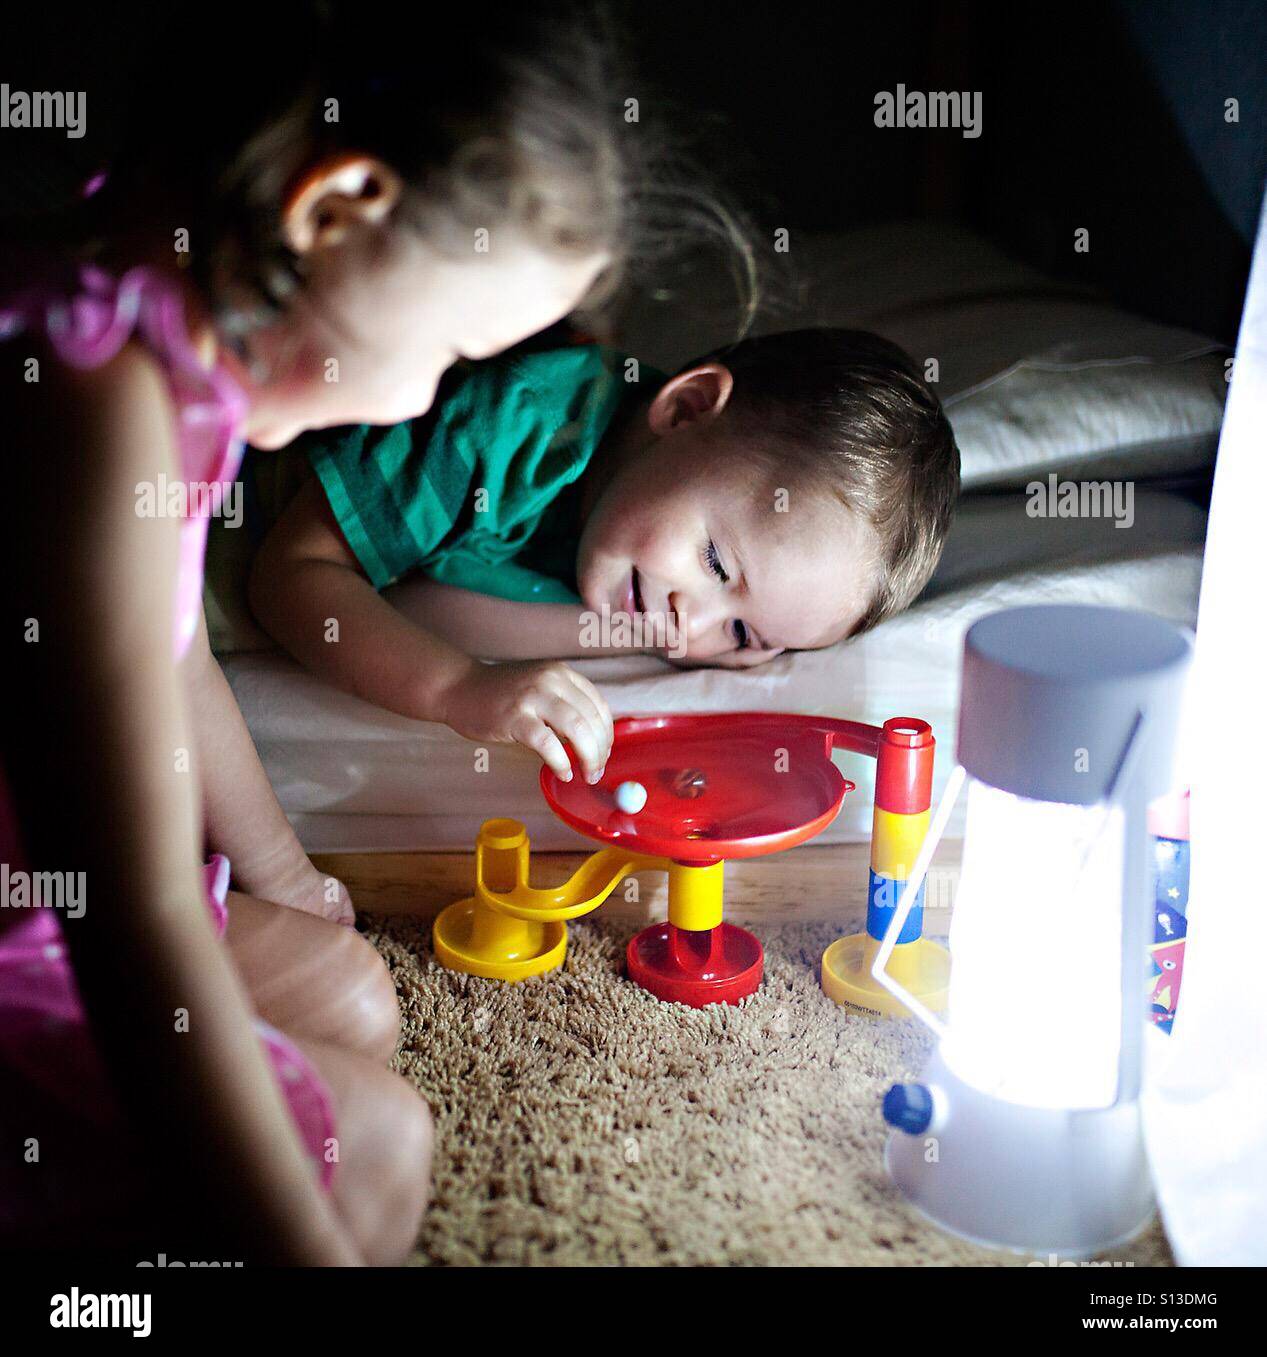 Kleinkind und Ihre Mädchen spielen mit einer Kugelbahn Spielzeug vor dem Schlafengehen durch Lampe Licht Stockfoto